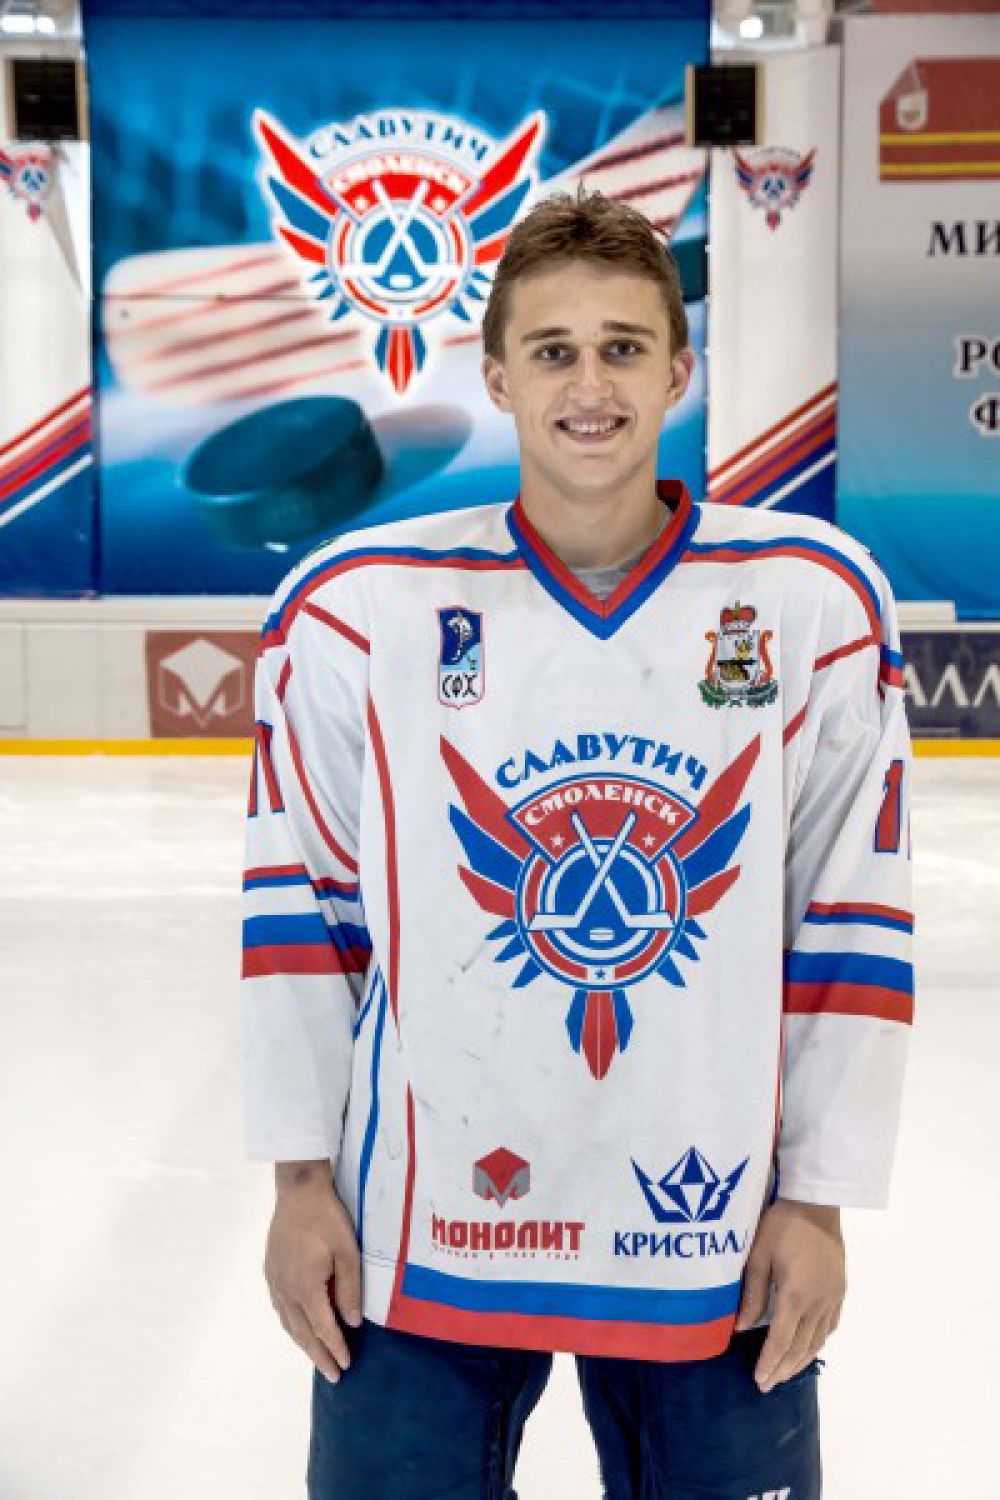 Никита Шпаков Родился в 1994 году, рост - 179 сантиметра, вес – 83 килограмм. На лед выходит под номером 11. Воспитанник пермского ХК «Молот».